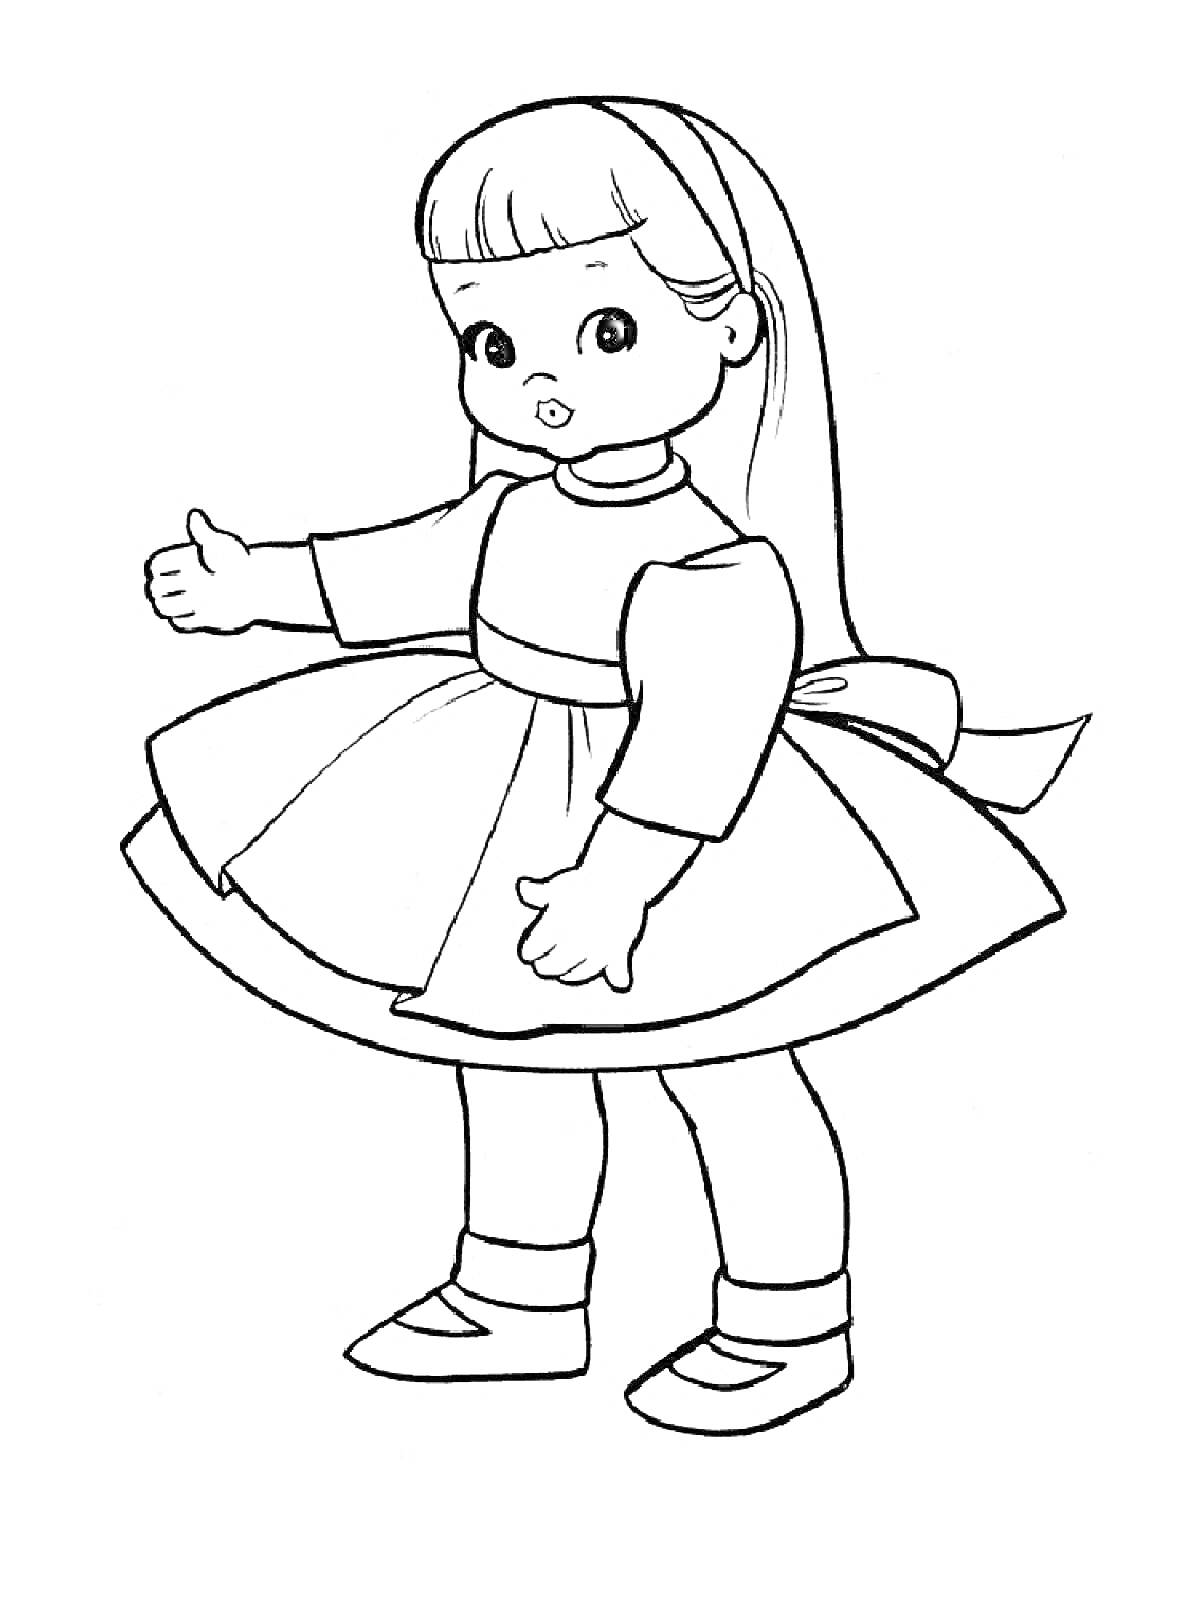 Раскраска Кукла в платье с поясом и бантом, с длинными волосами и ободком